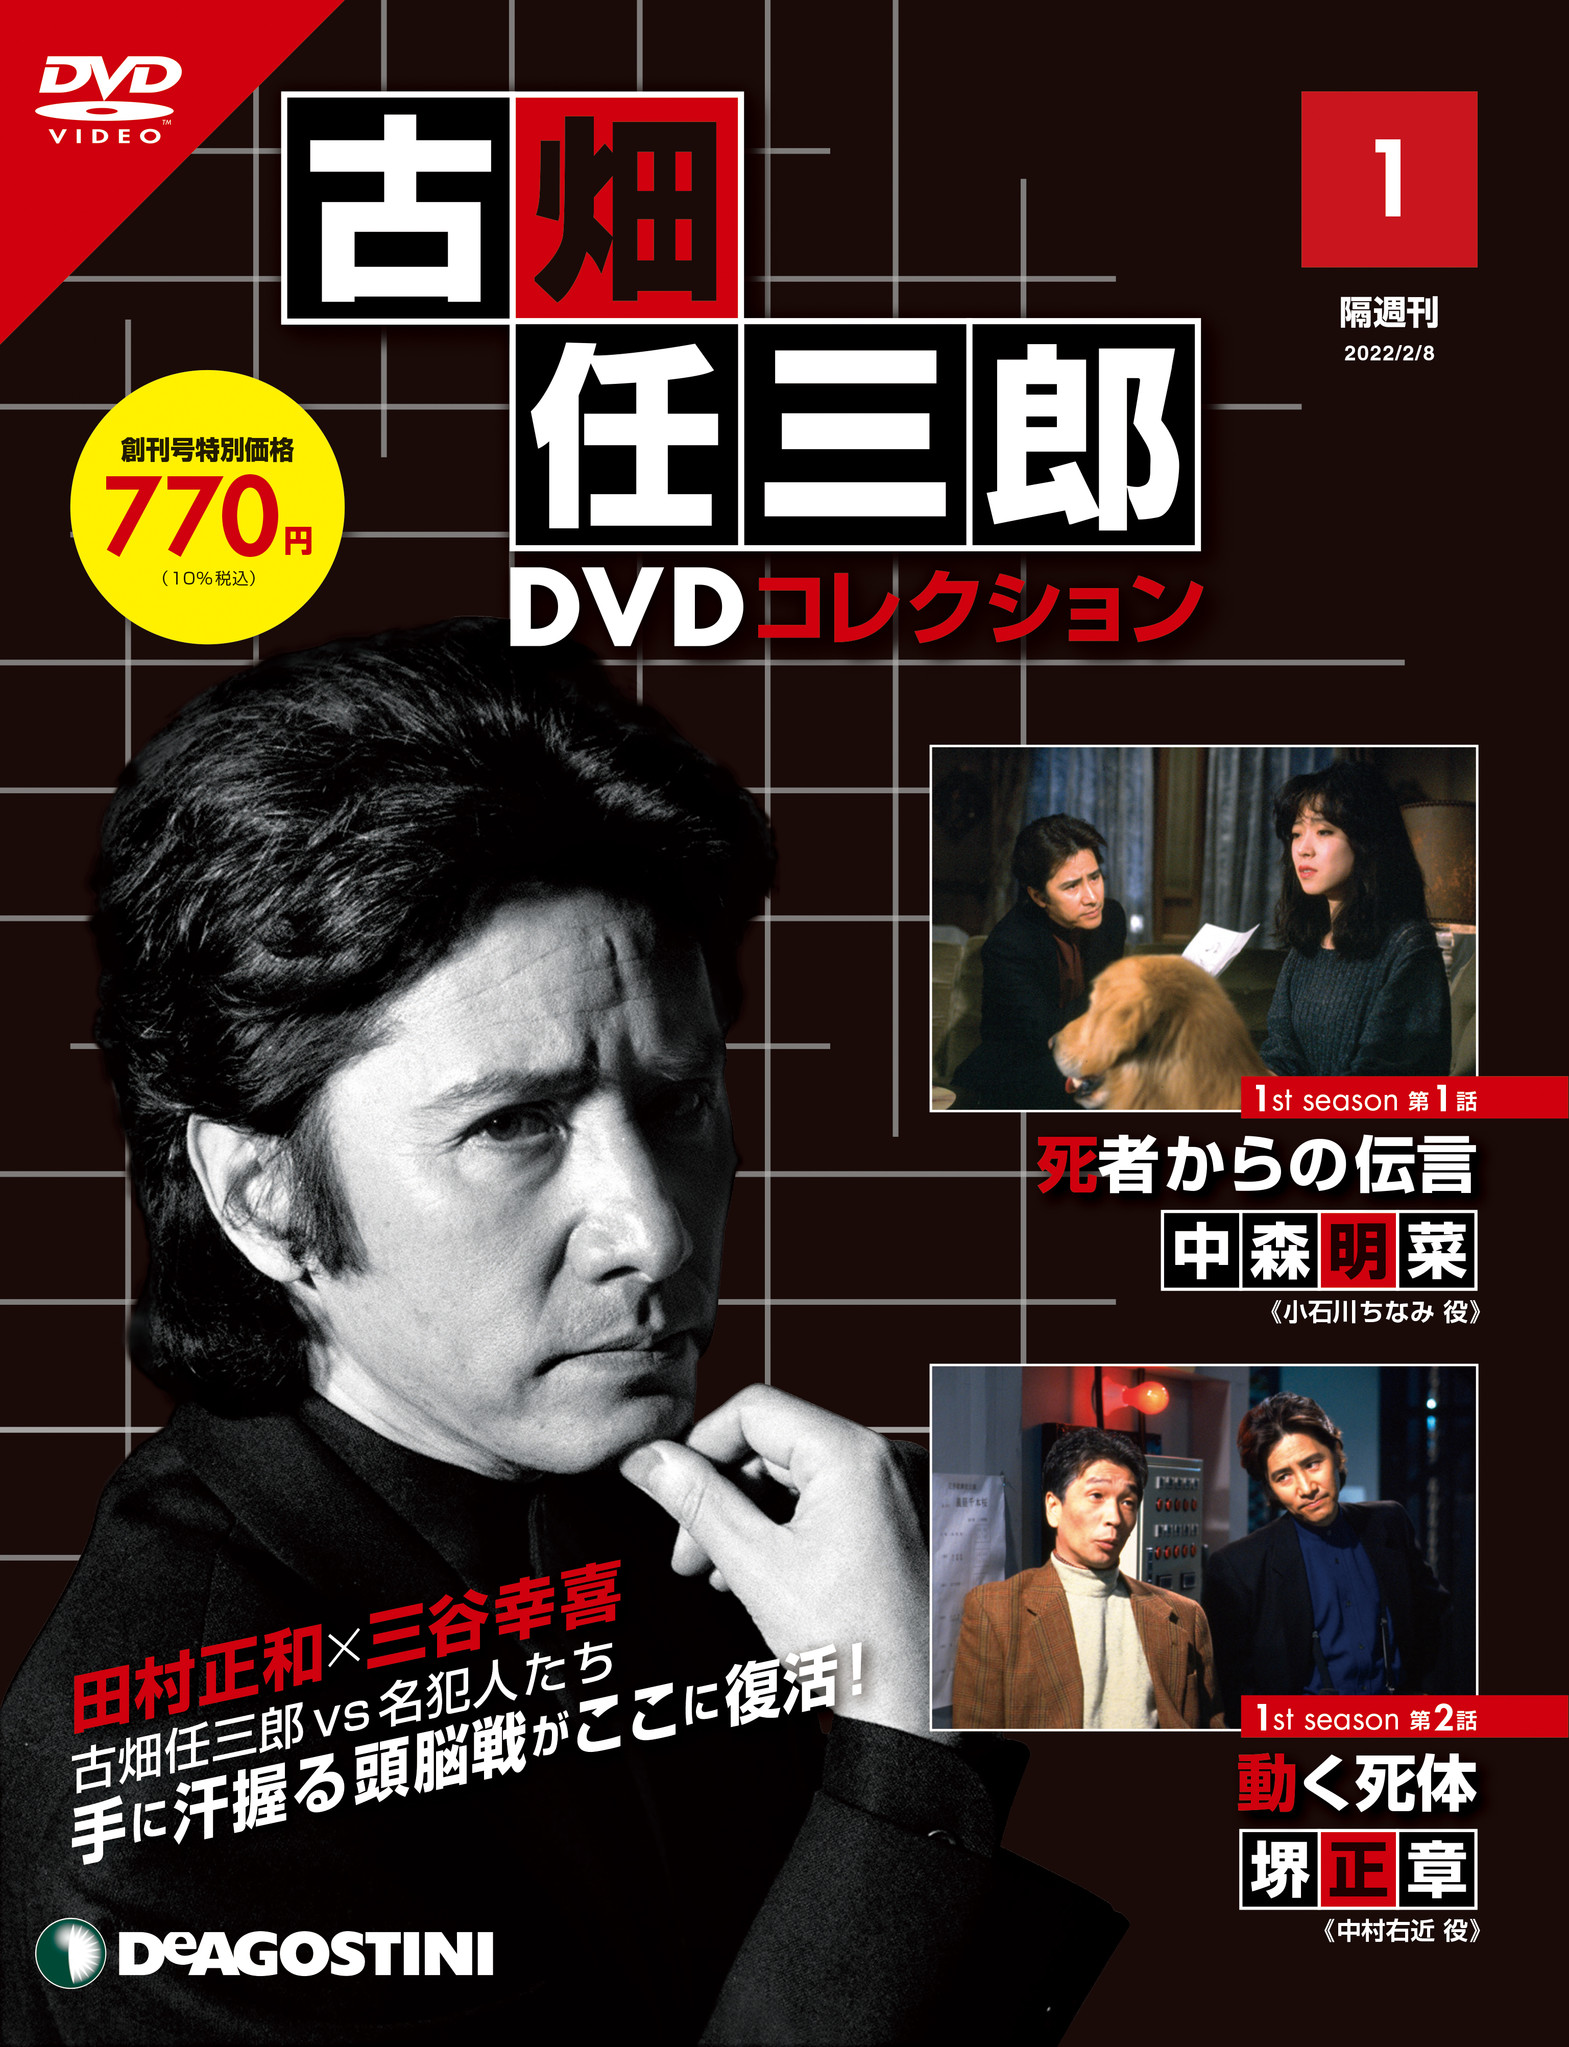 古畑任三郎 3rd season 02 DVD